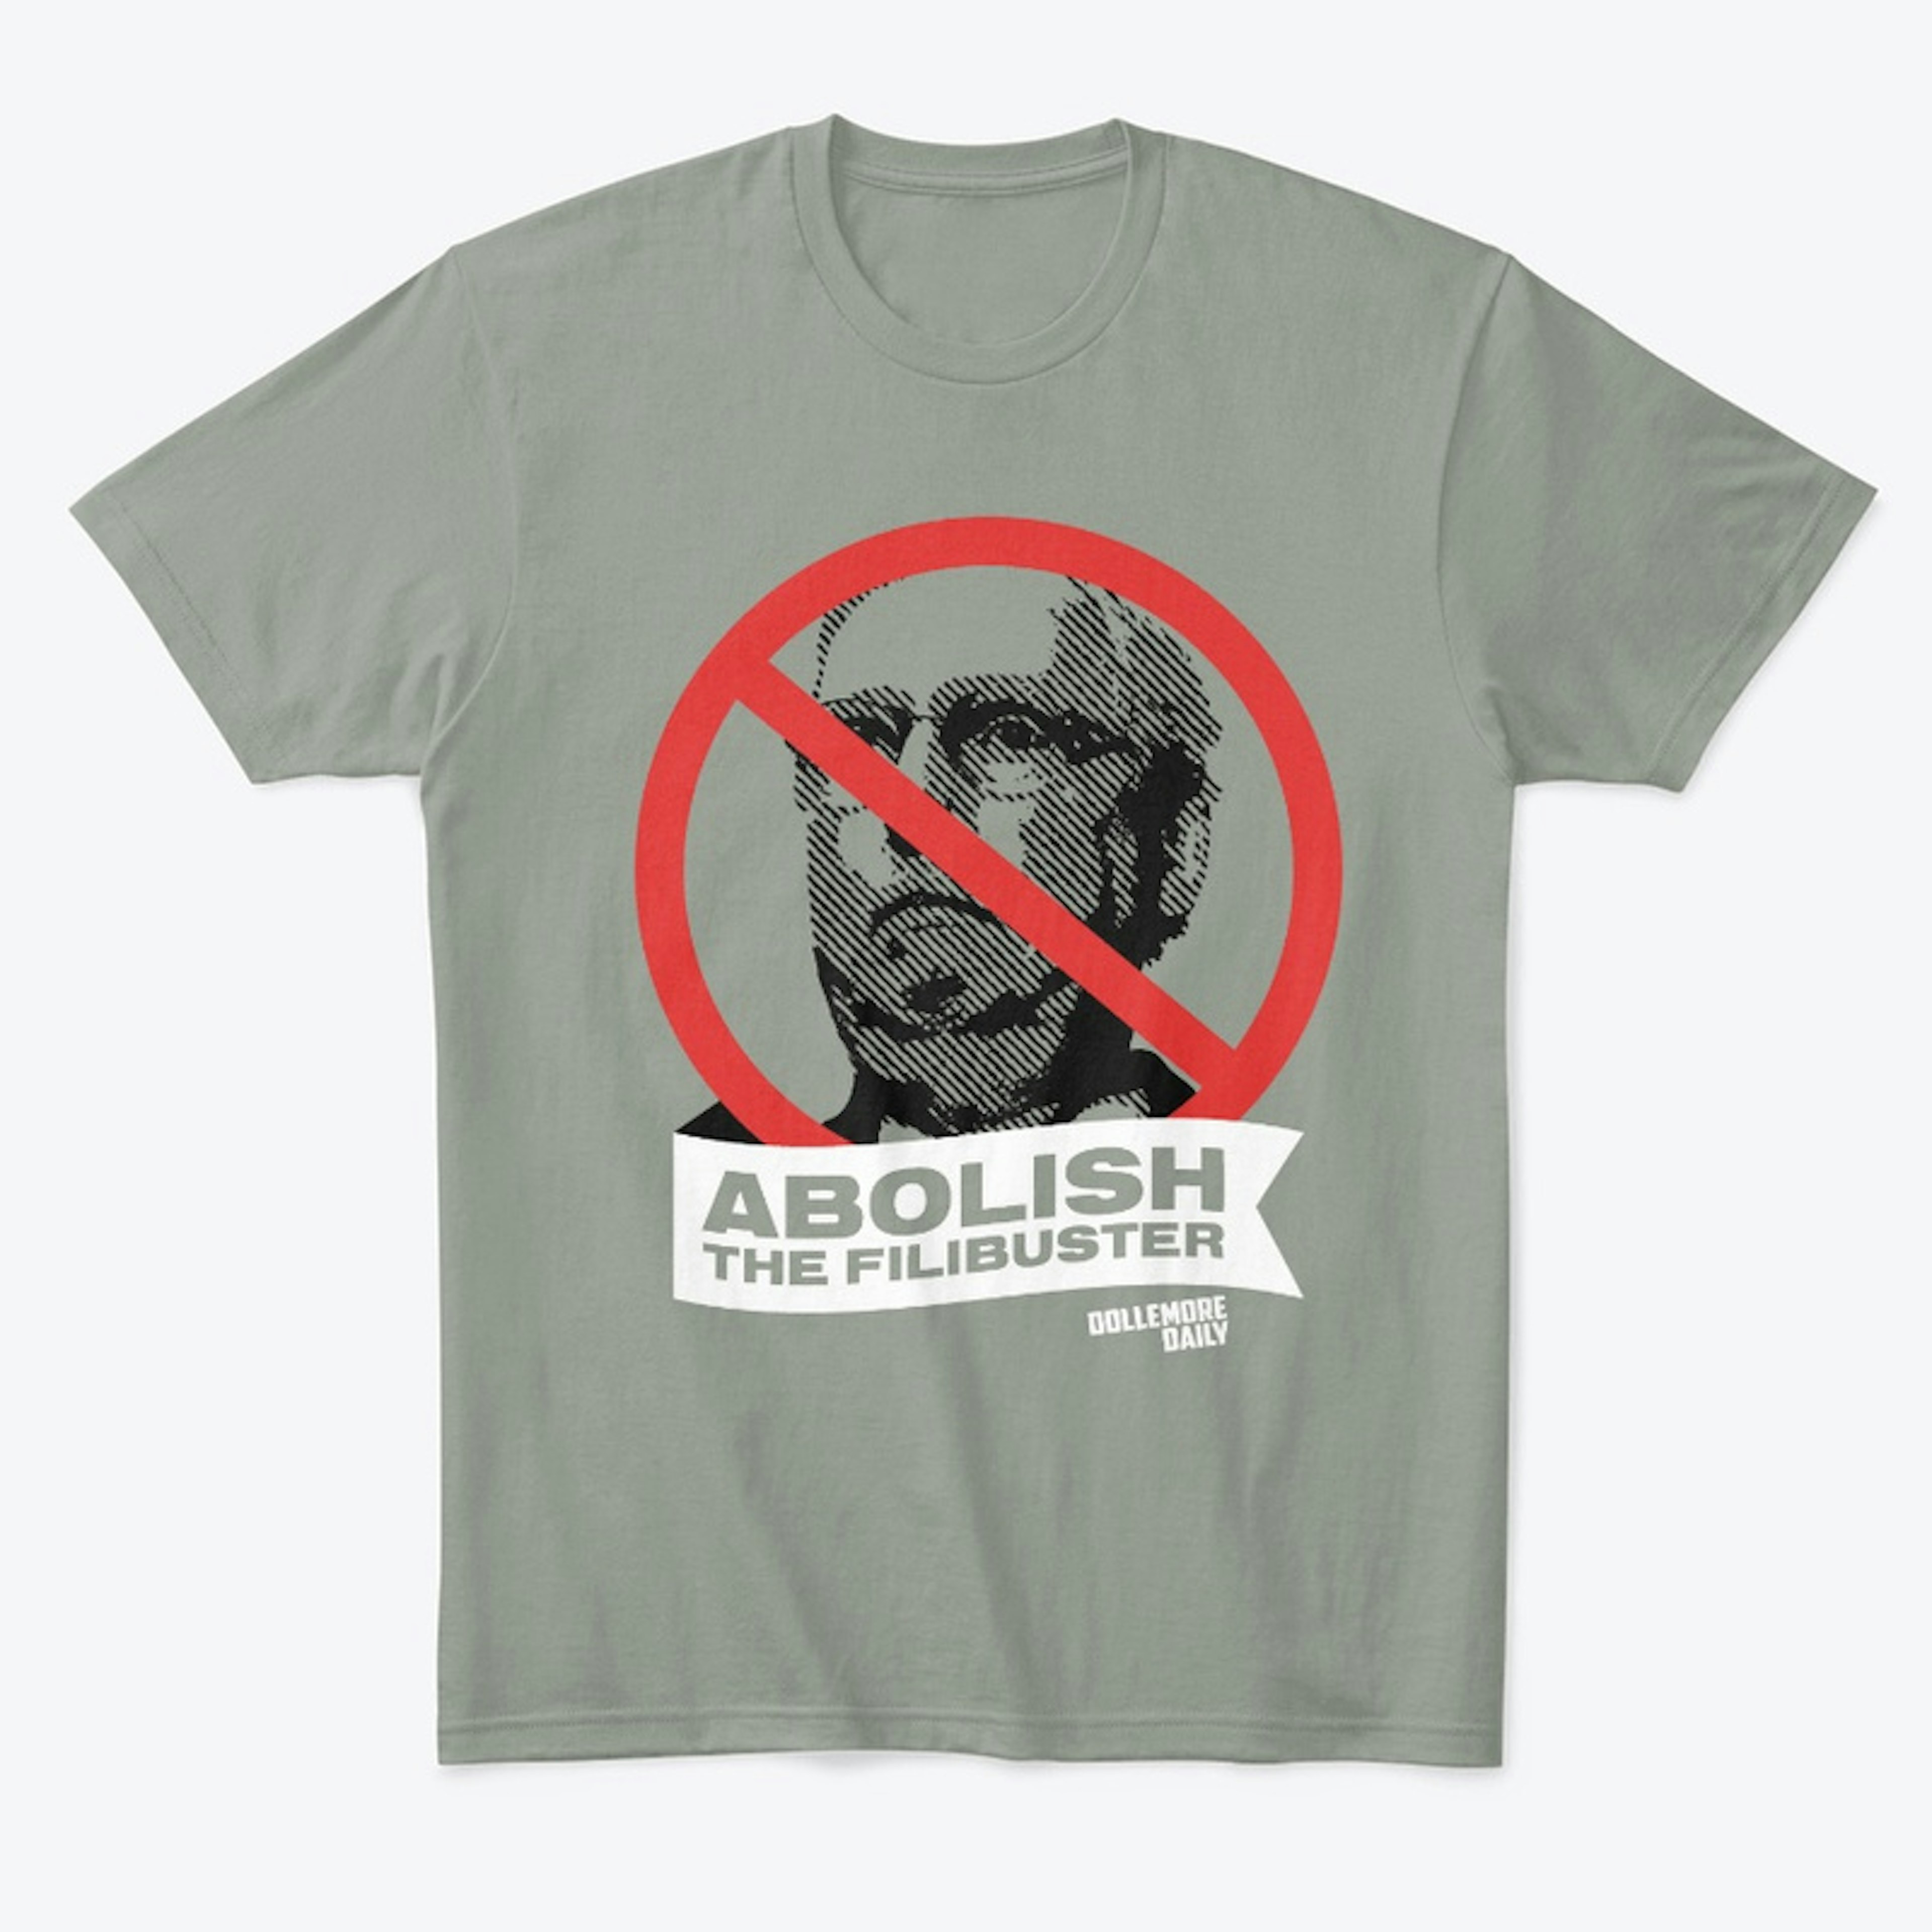 Abolish the Filibuster X